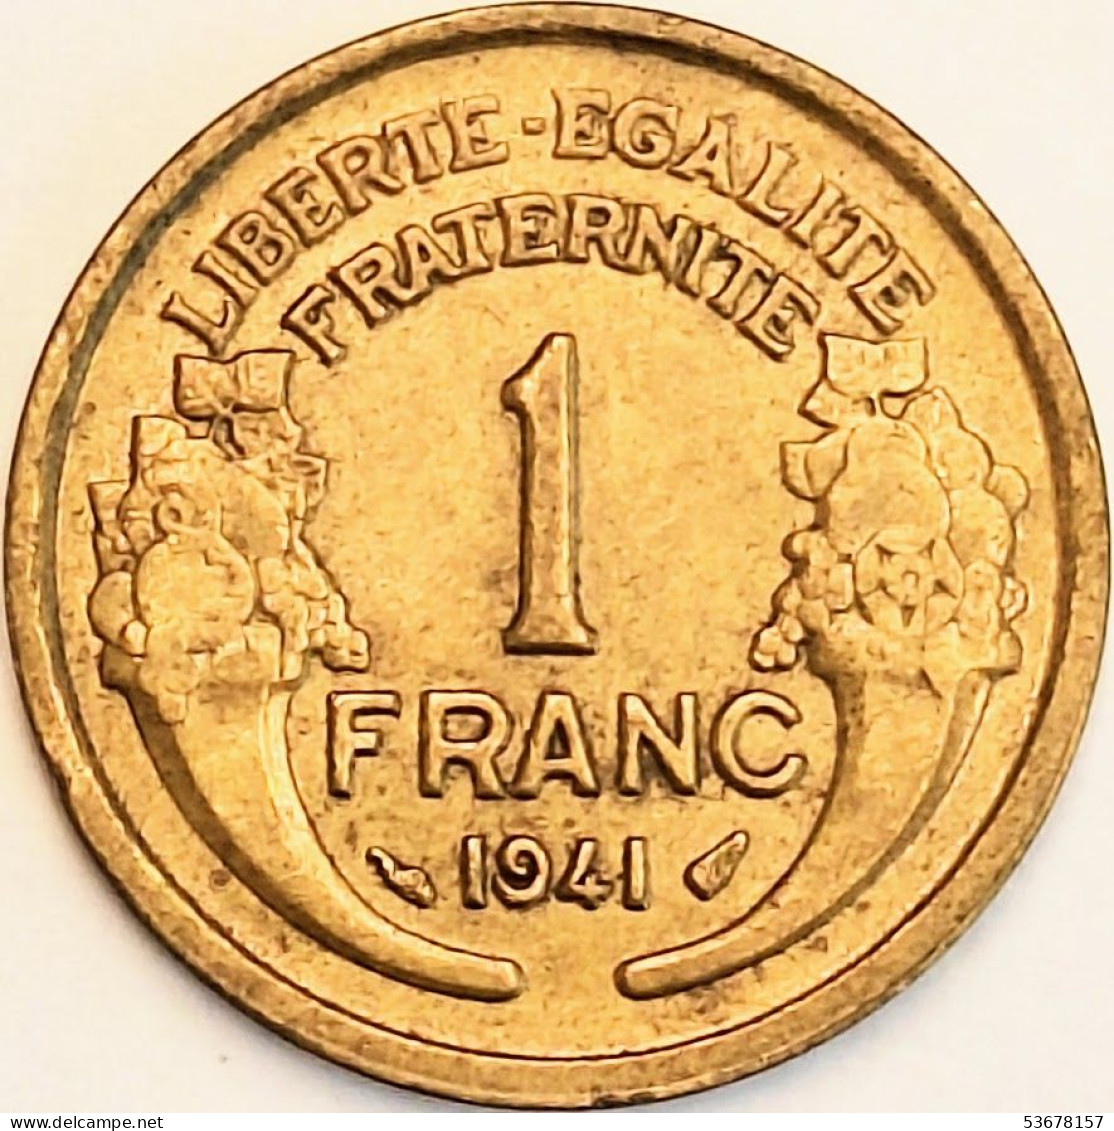 France - Franc 1941, KM# 885 (#4079) - 1 Franc